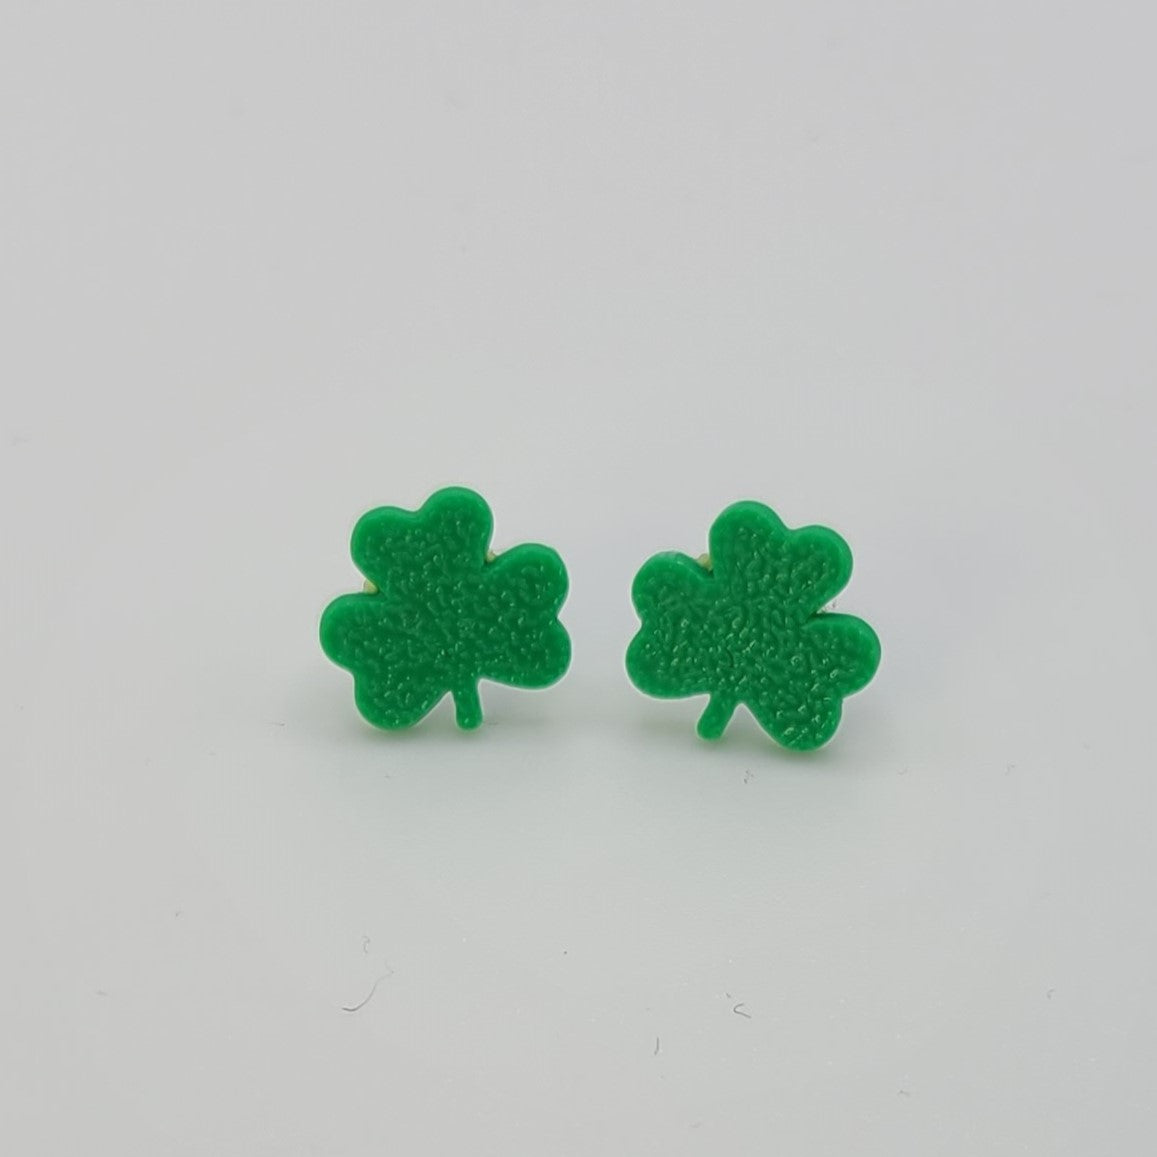 Clover Stud Earrings in green.